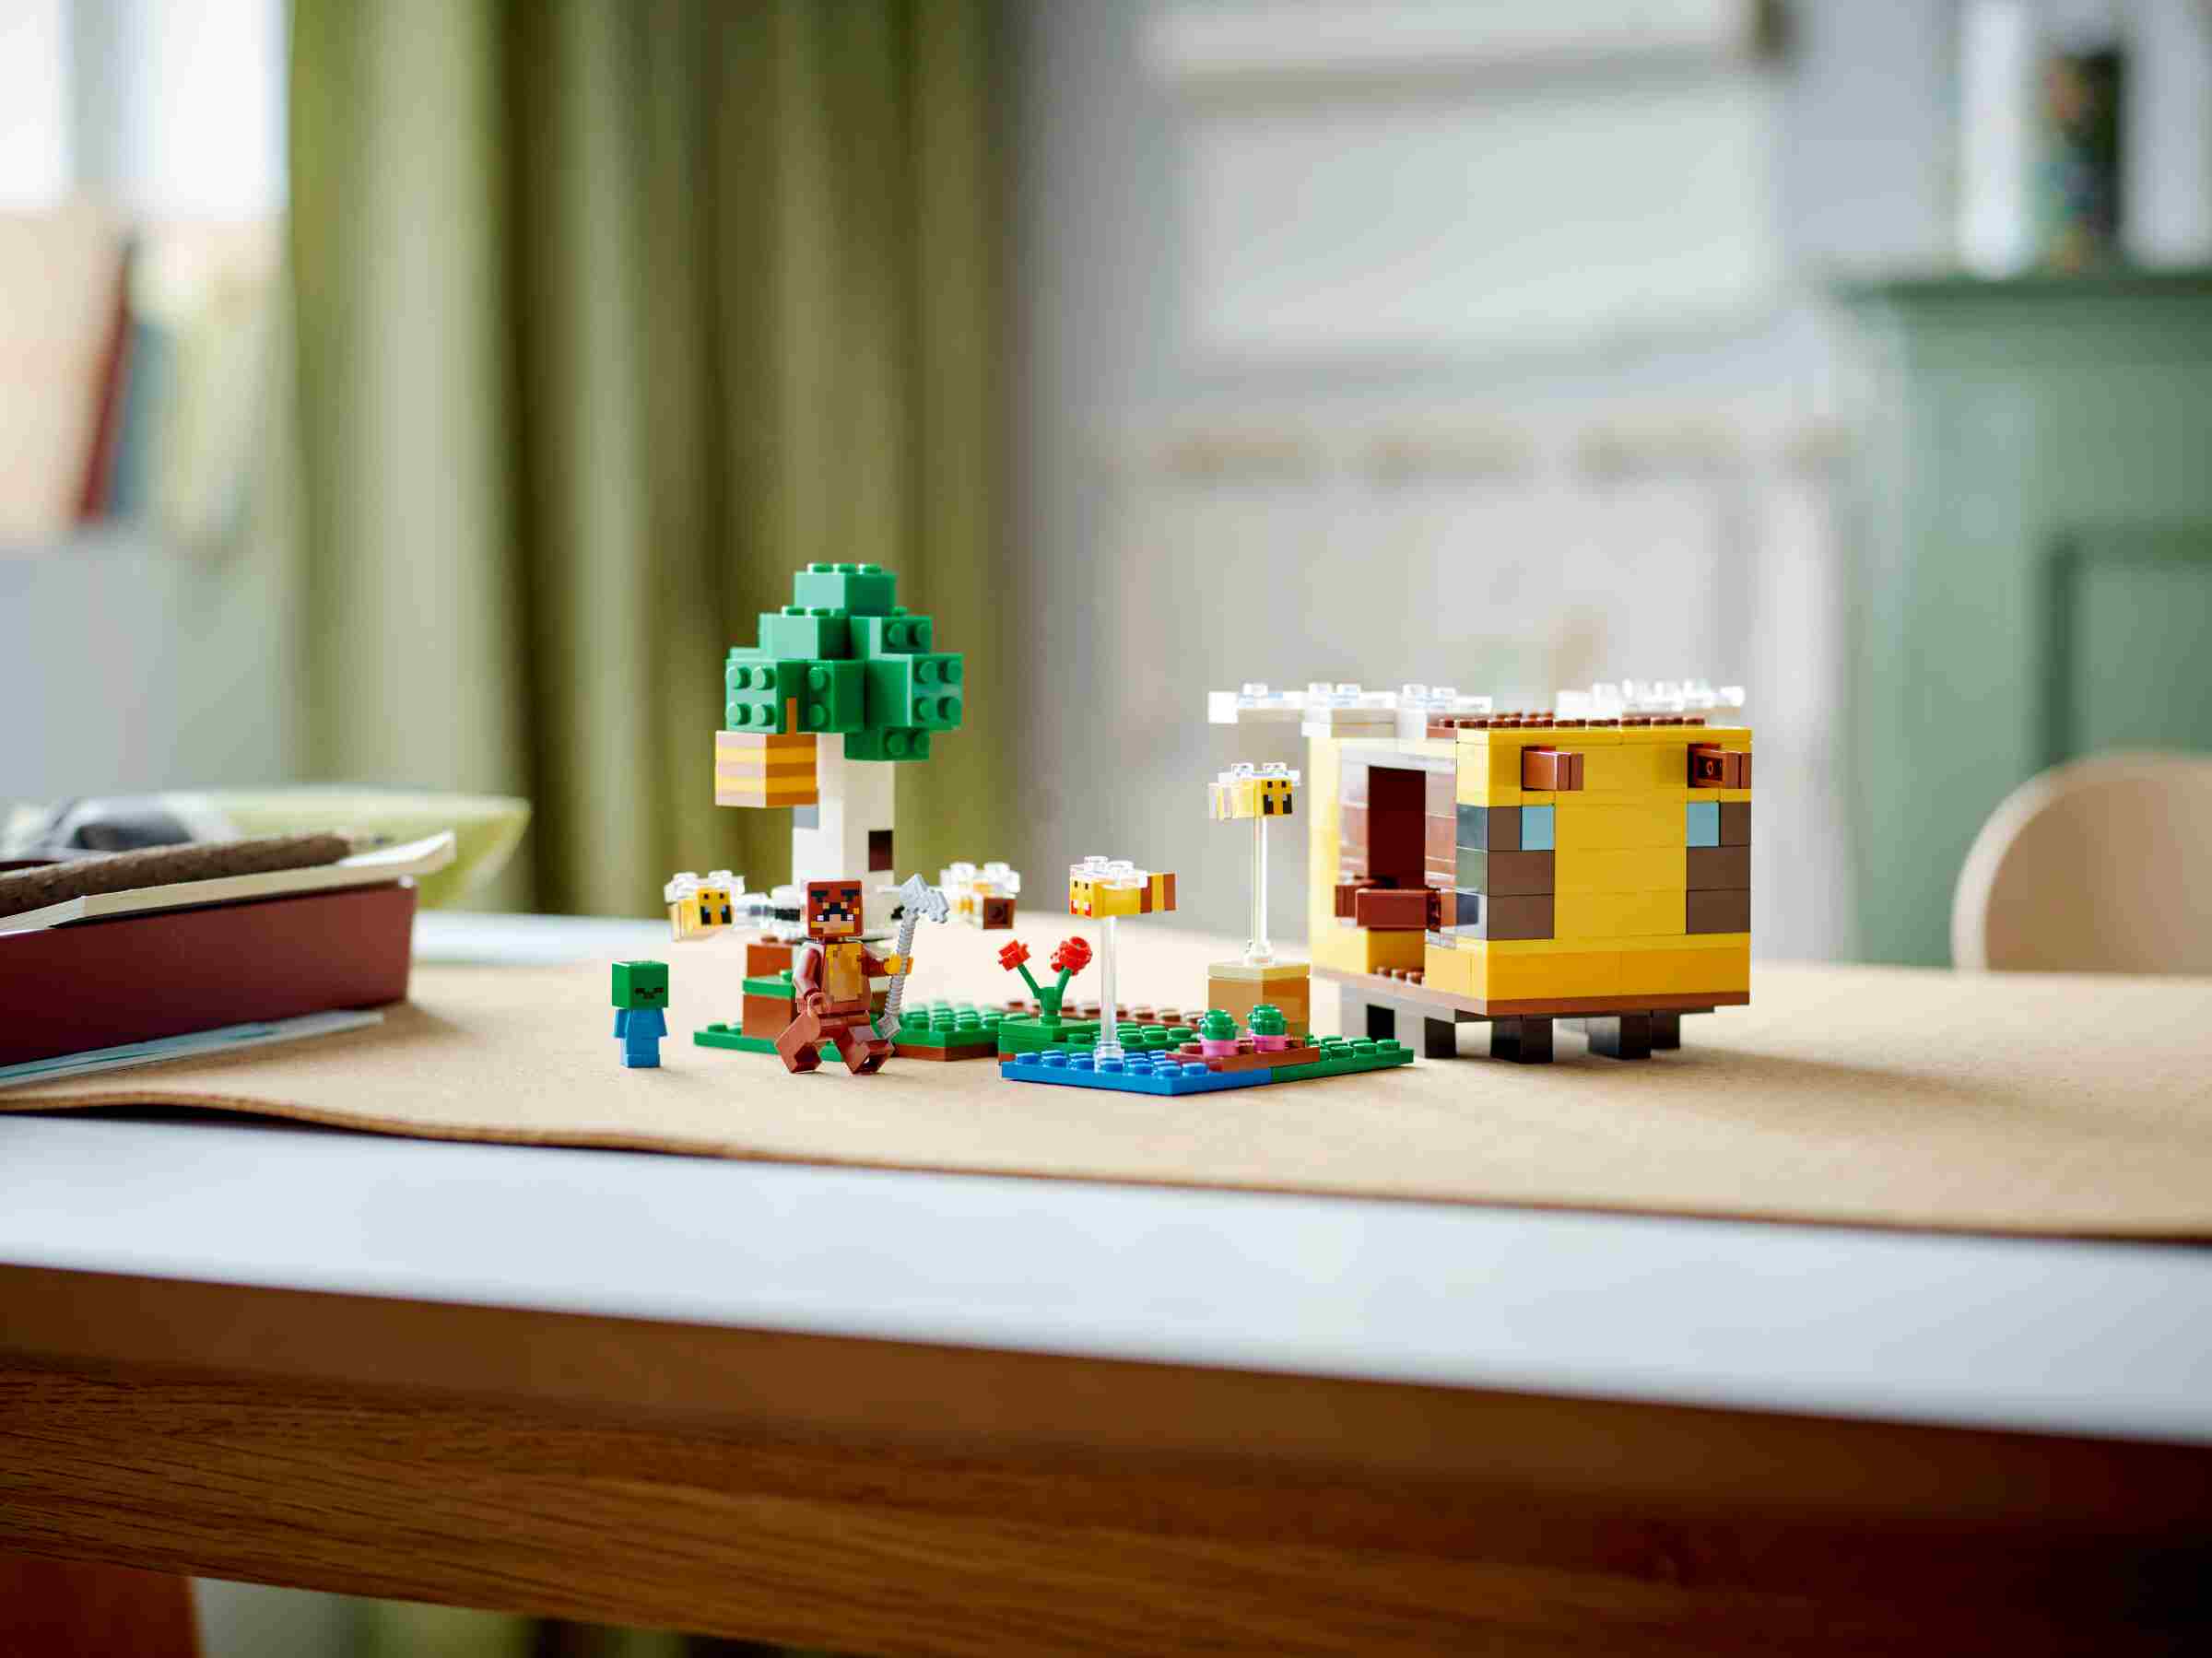 LEGO 21241 Minecraft Das Bienenhäuschen, Honigbär, Zombiebaby, 4 Bienen